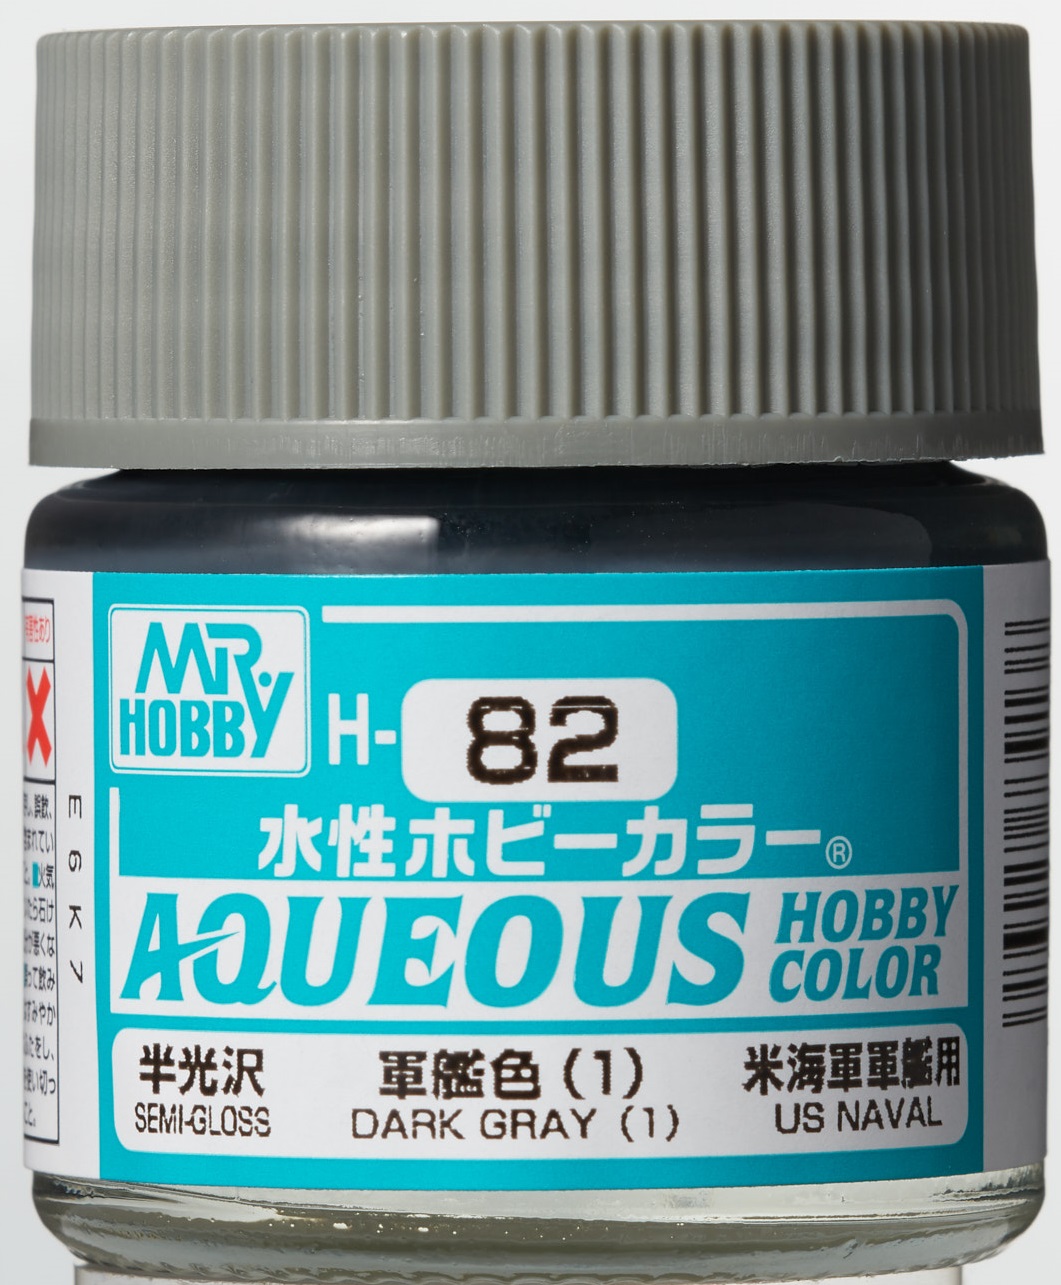 Mr. Aqueous Hobby Color - Dark Grey (1) - H82 - Dunkelgrau (1)